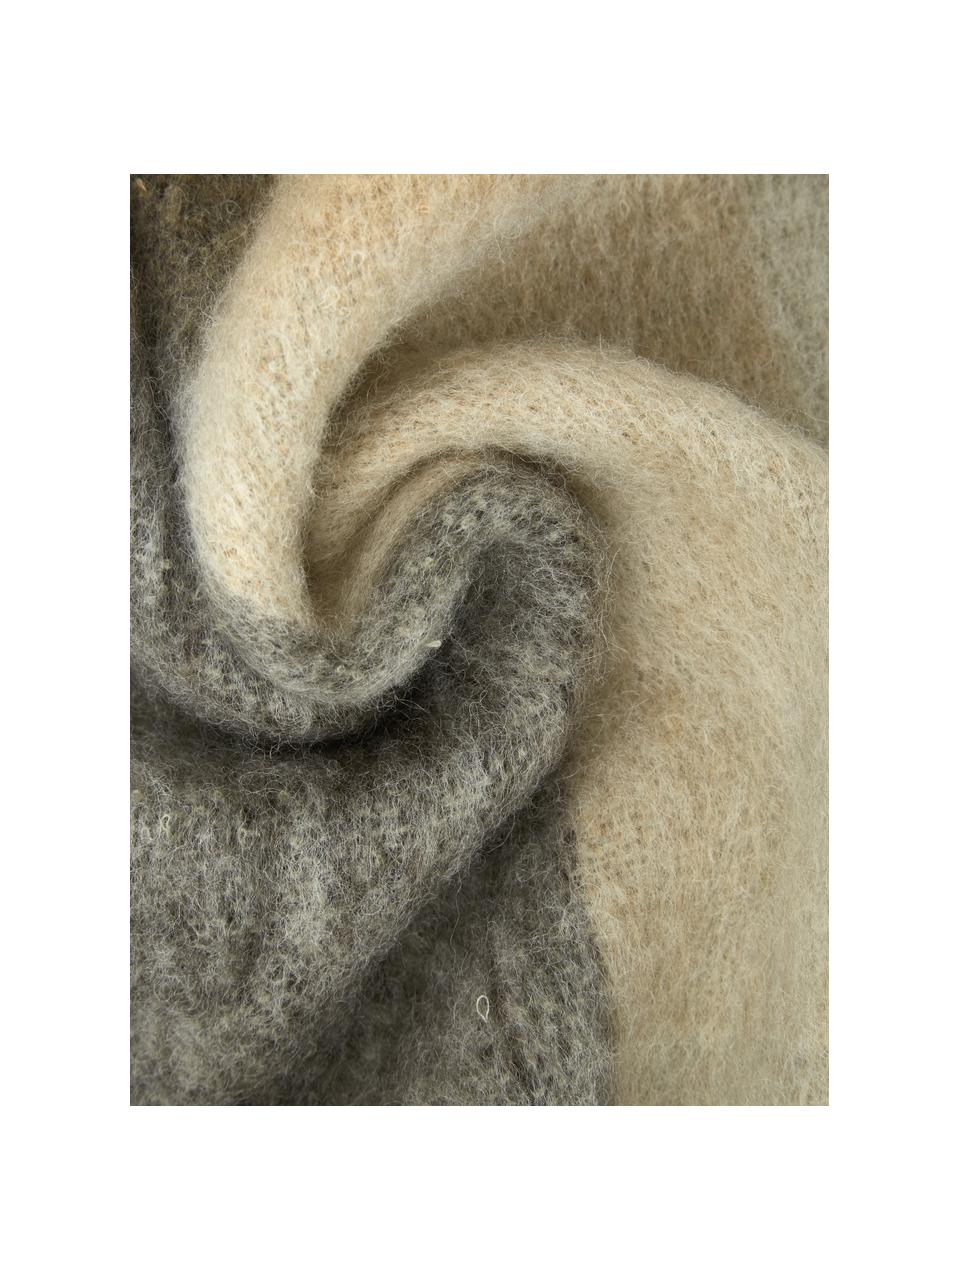 Wolldecke Check mit Fransen in Braun/Beige, 50% Wolle, 50% Acryl, Beige, Braun, 125 x 150 cm